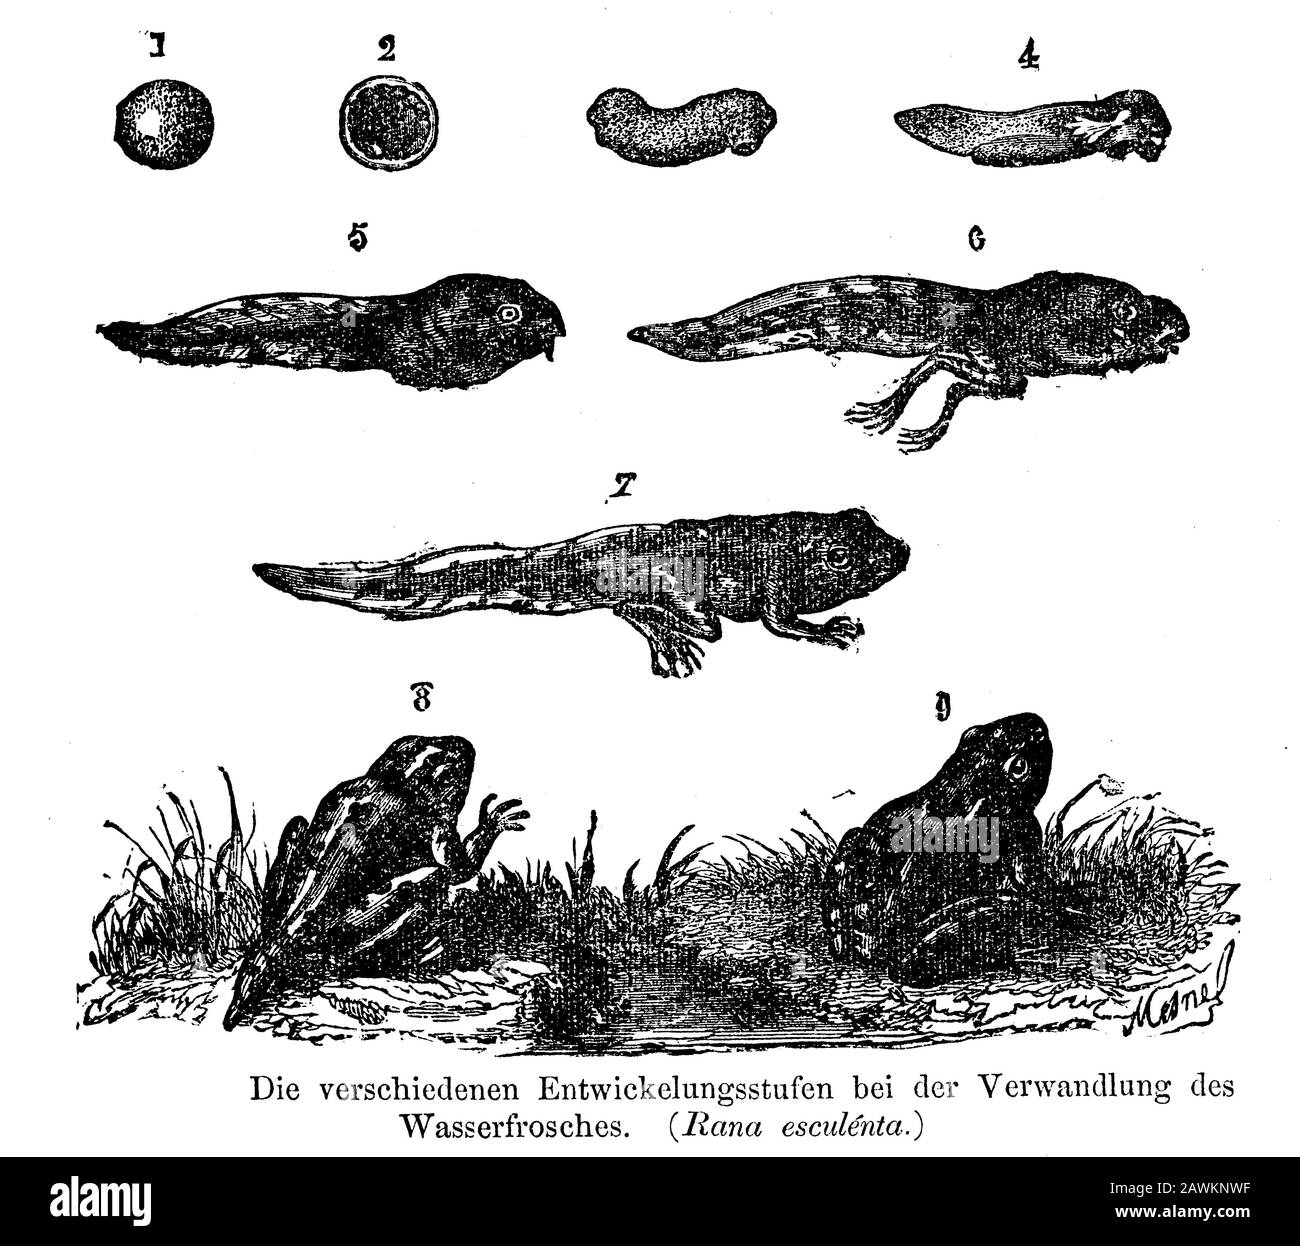 Rana commestibile, Rana esculenta, Mesnel (libro zoologico, 1877) Foto Stock